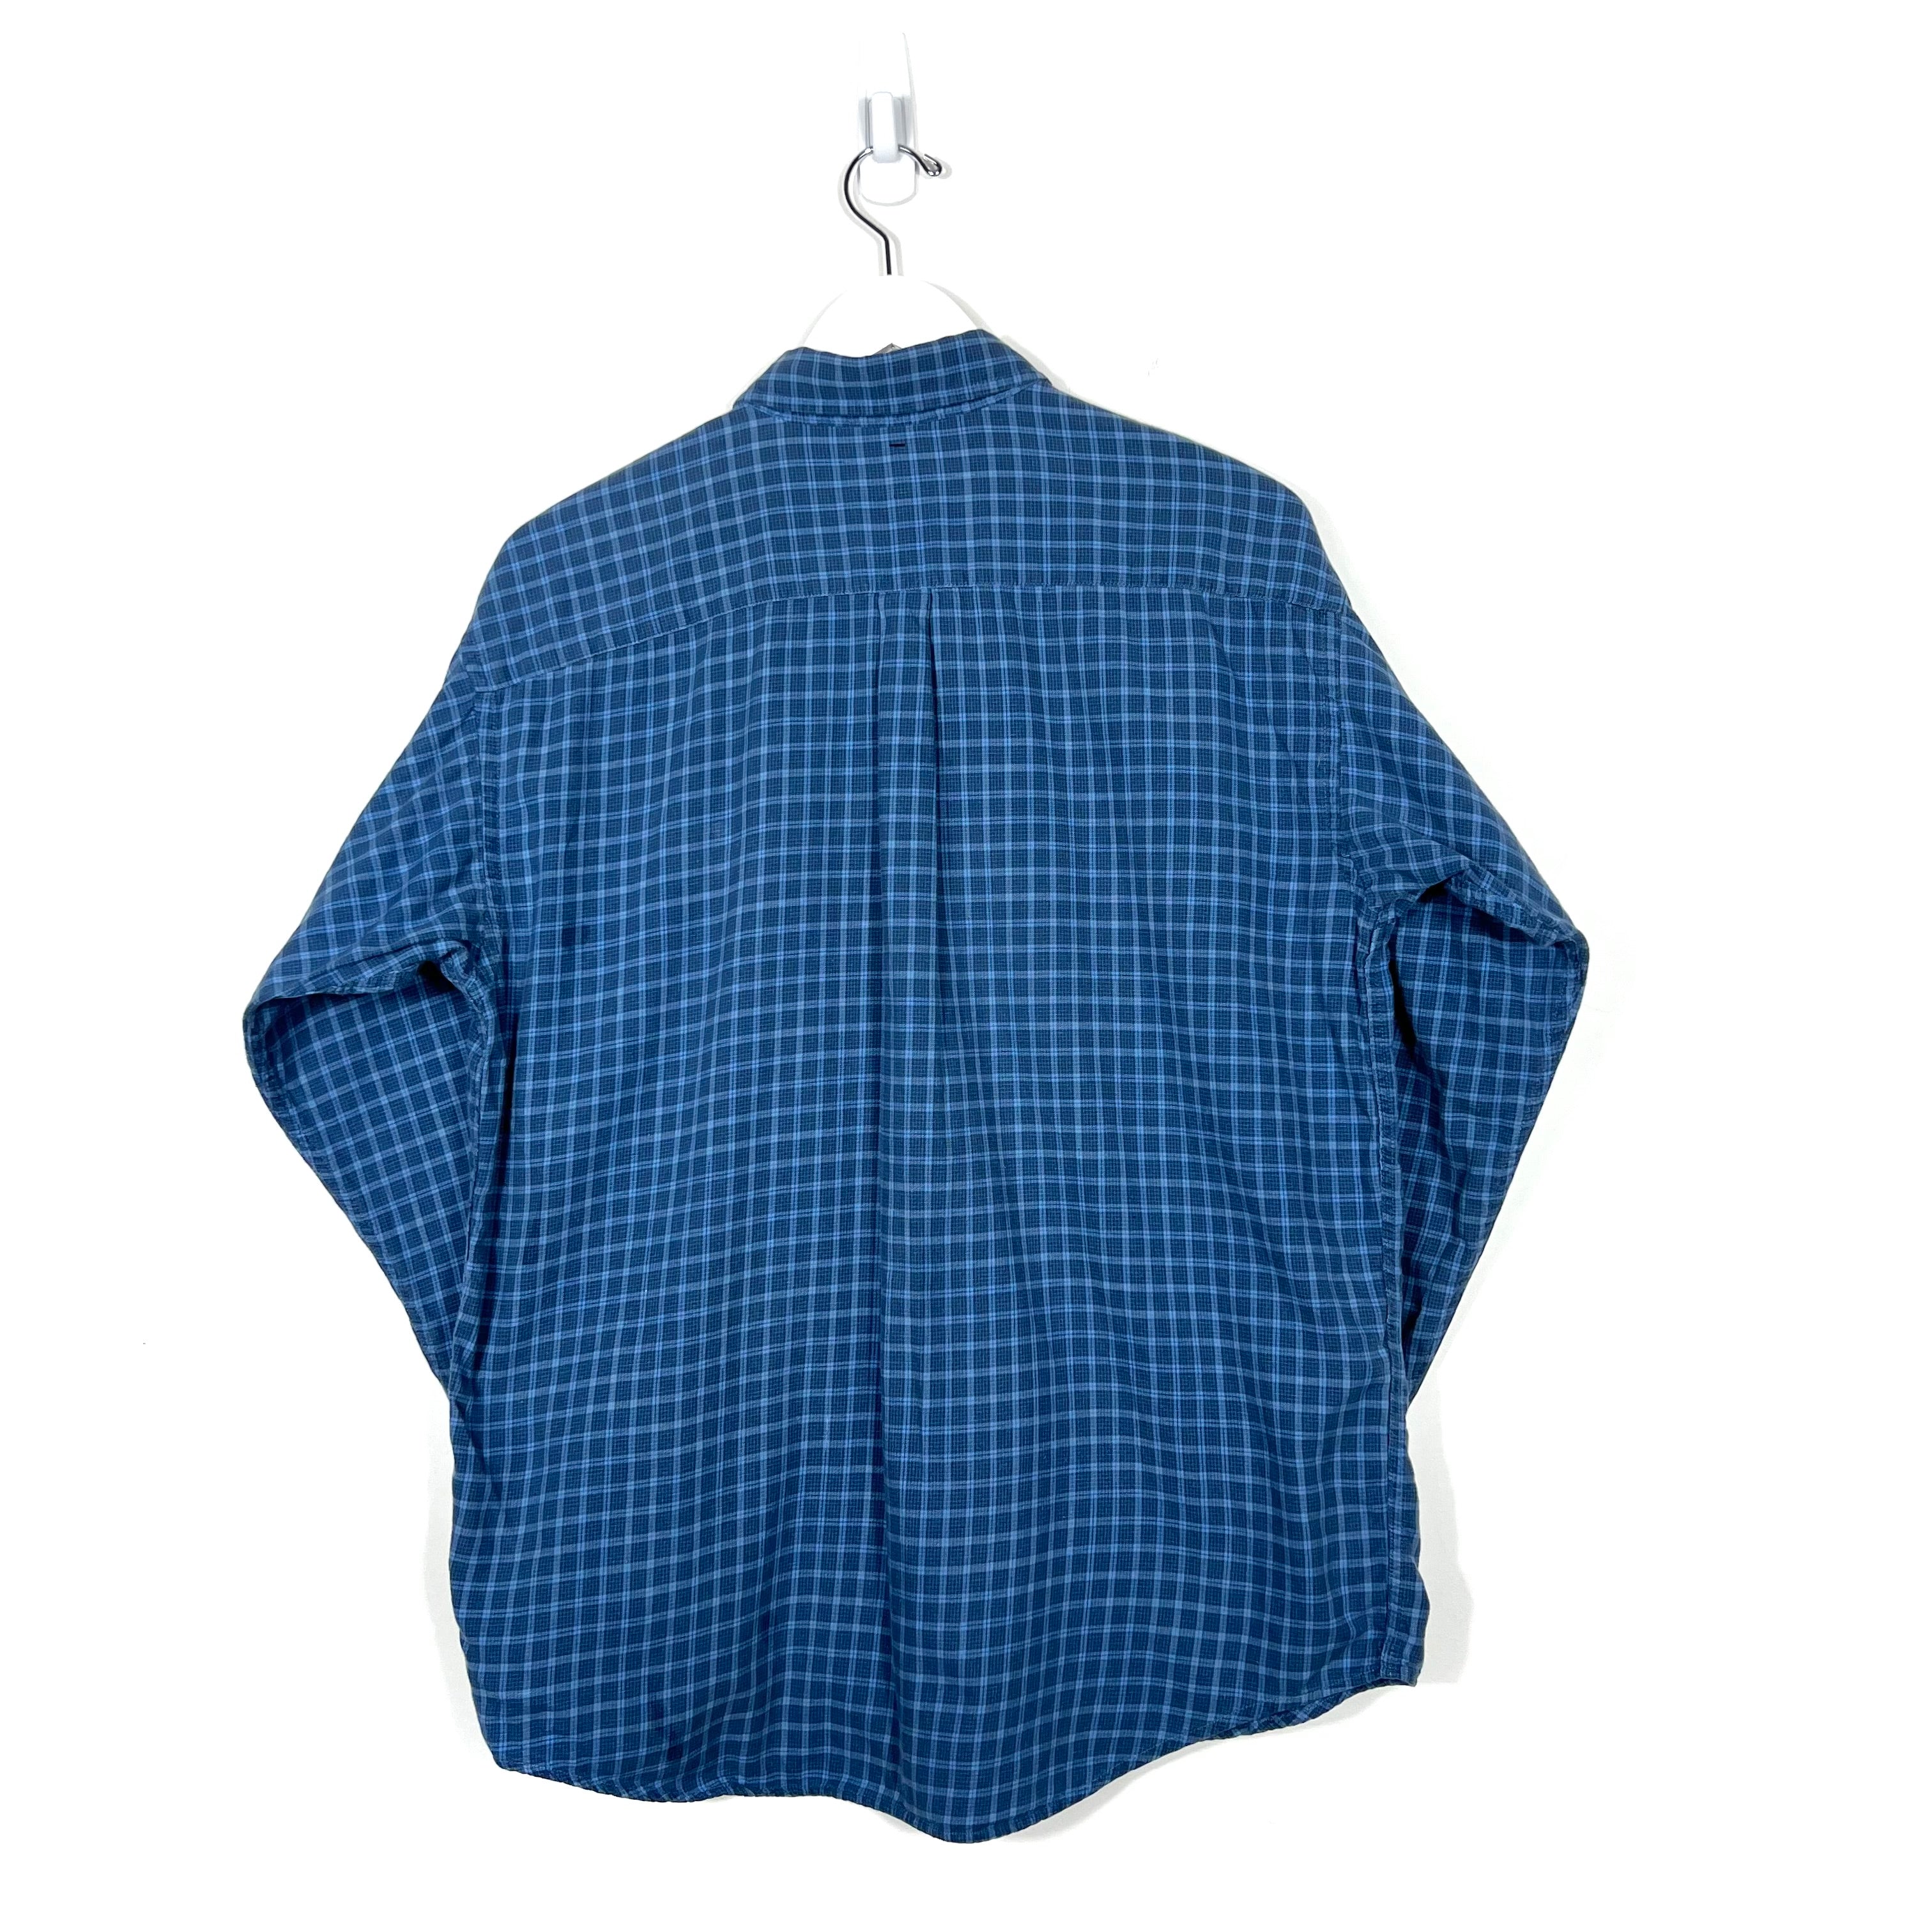 Vintage Patagonia Button-Down Shirt - Men's Medium